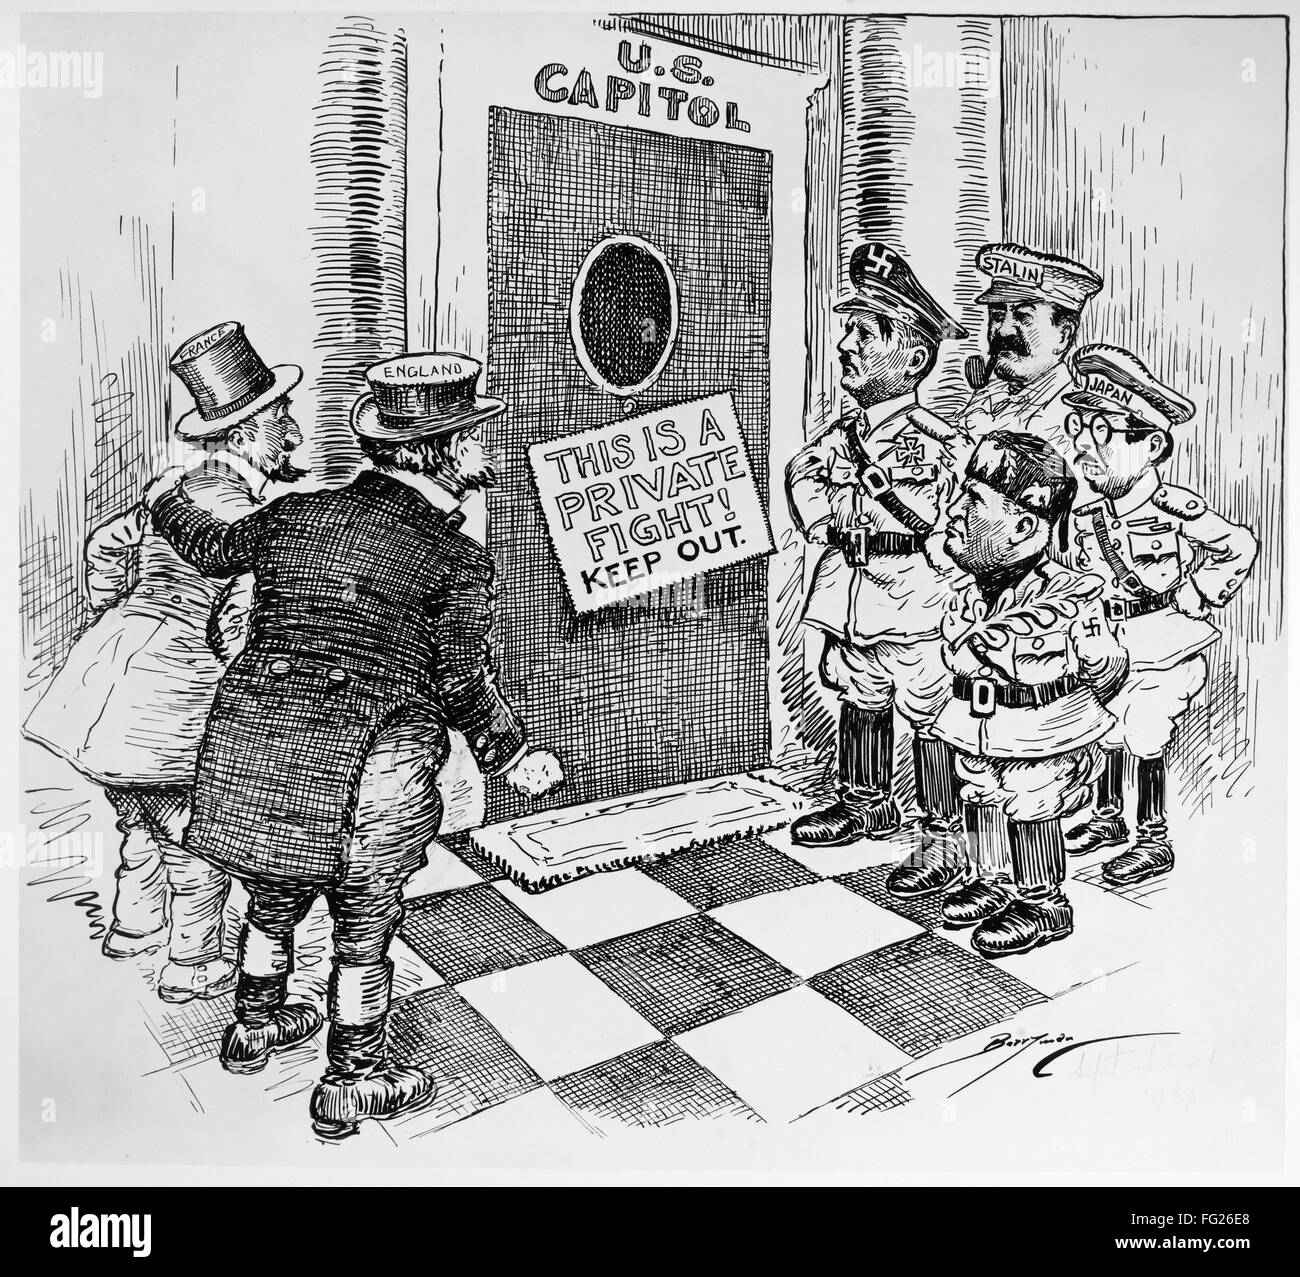 La SEGUNDA GUERRA MUNDIAL: Cartoon, 1939. /N'es una lucha privada! Mantener  fuera.